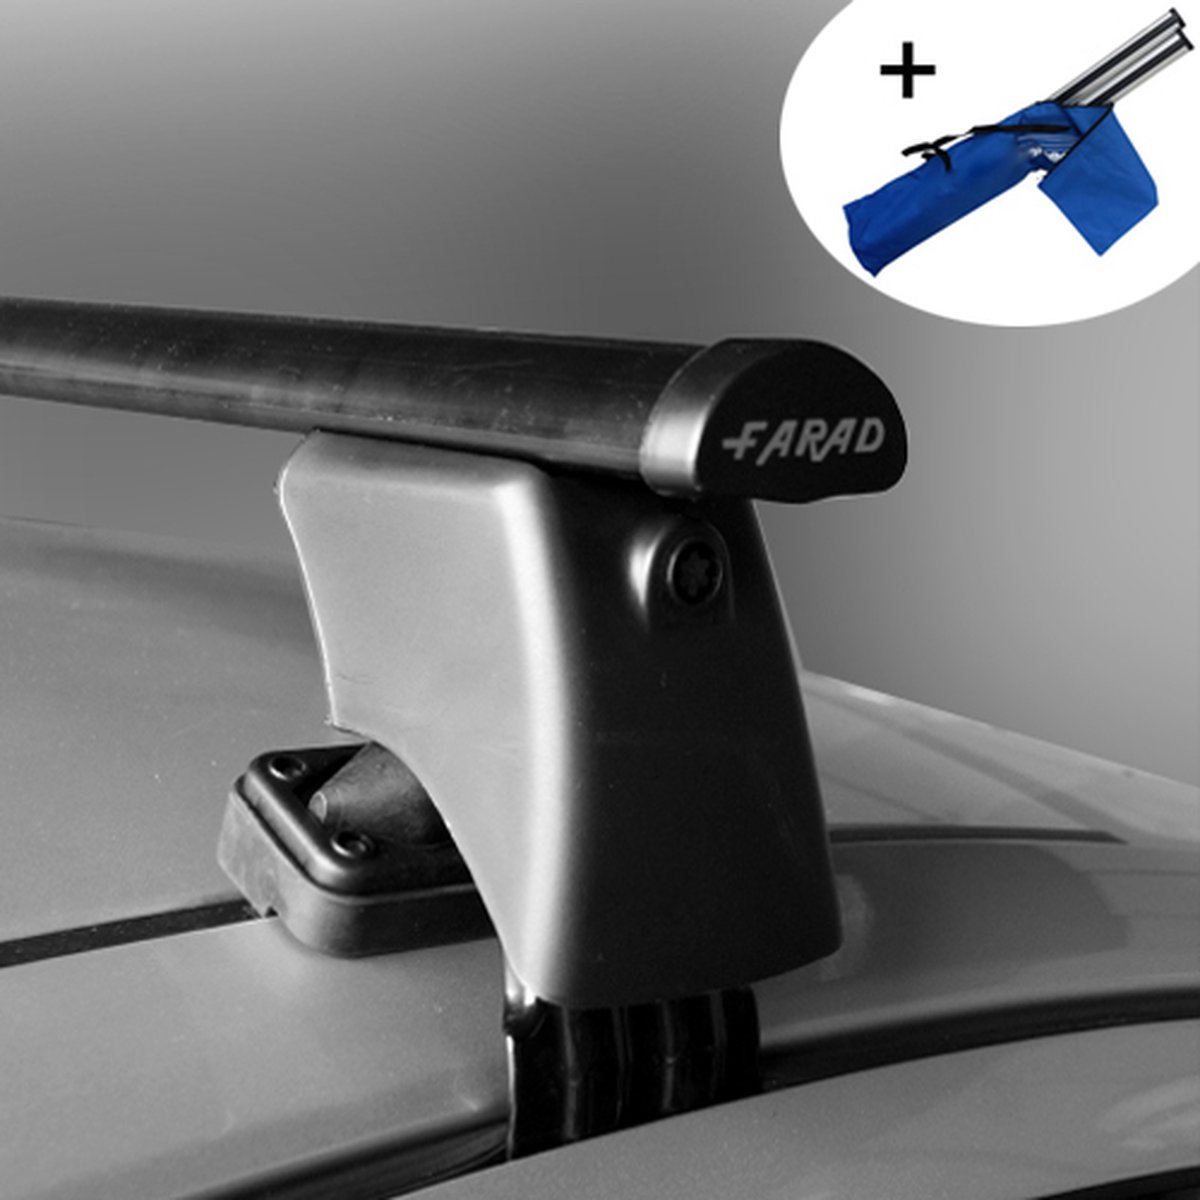 Dakdragers geschikt voor Seat Toledo 5 deurs hatchback vanaf 2013 - Staal - inclusief dakdrager opbergtas